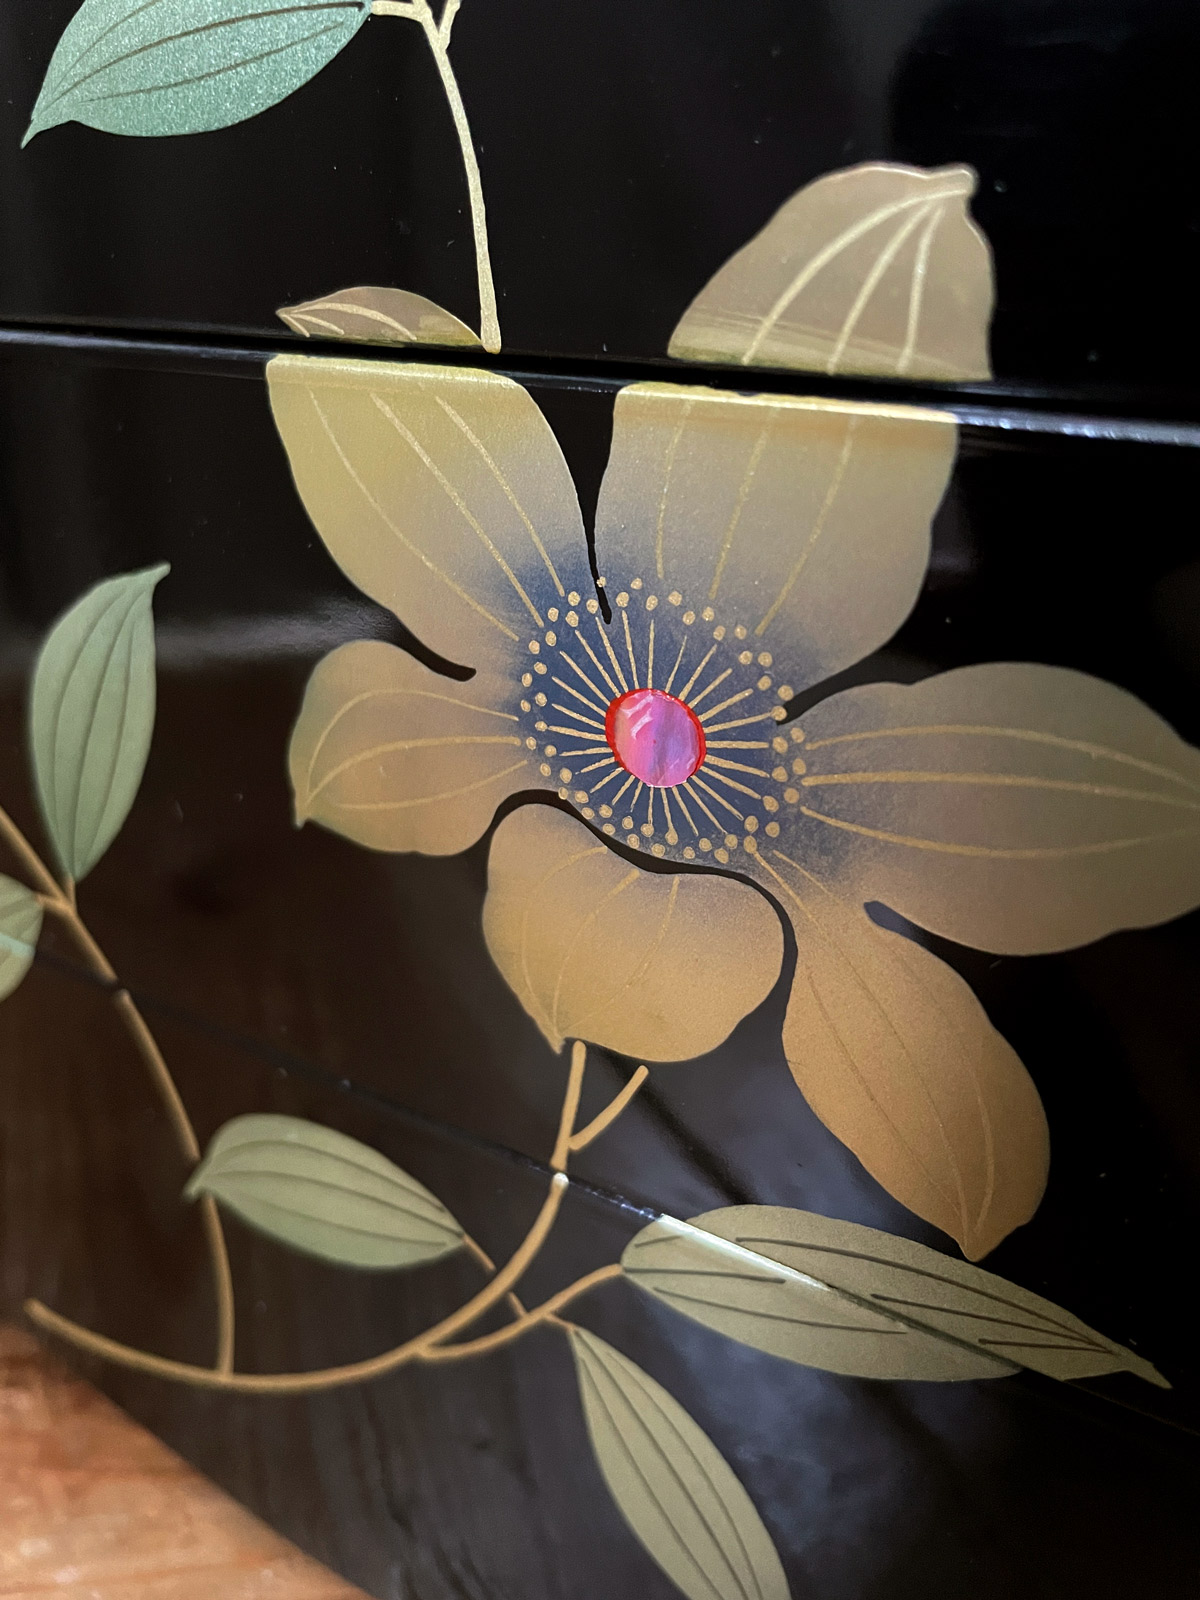 Jubako – lacquerware 3-layered box with flowerdesign